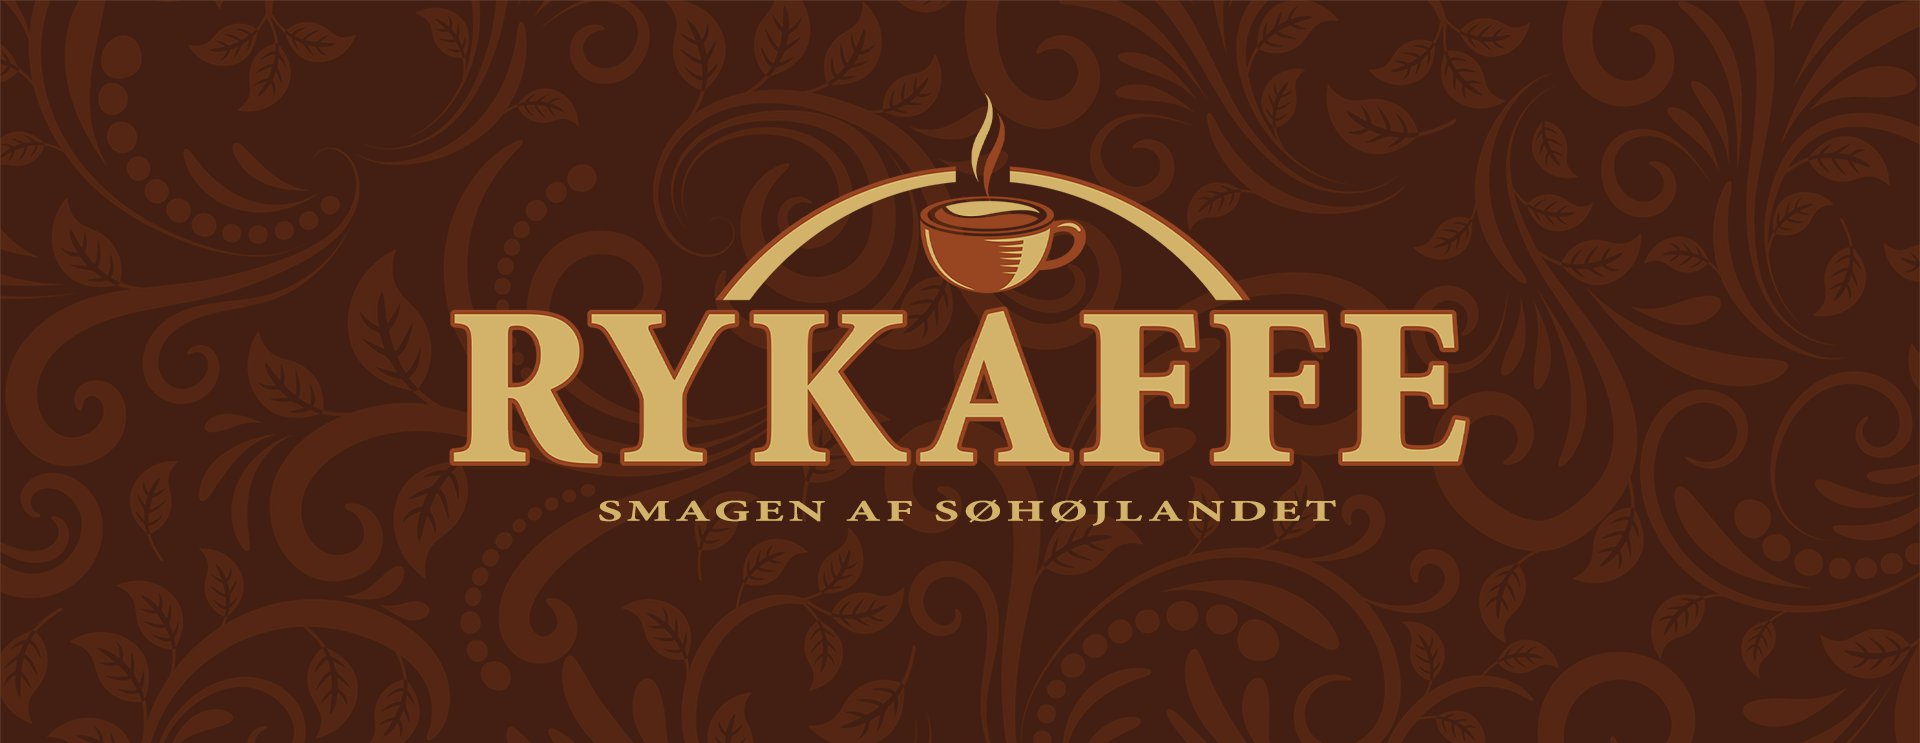 Kaffe I Søhøjlandet, Himmelbjerget, Ry